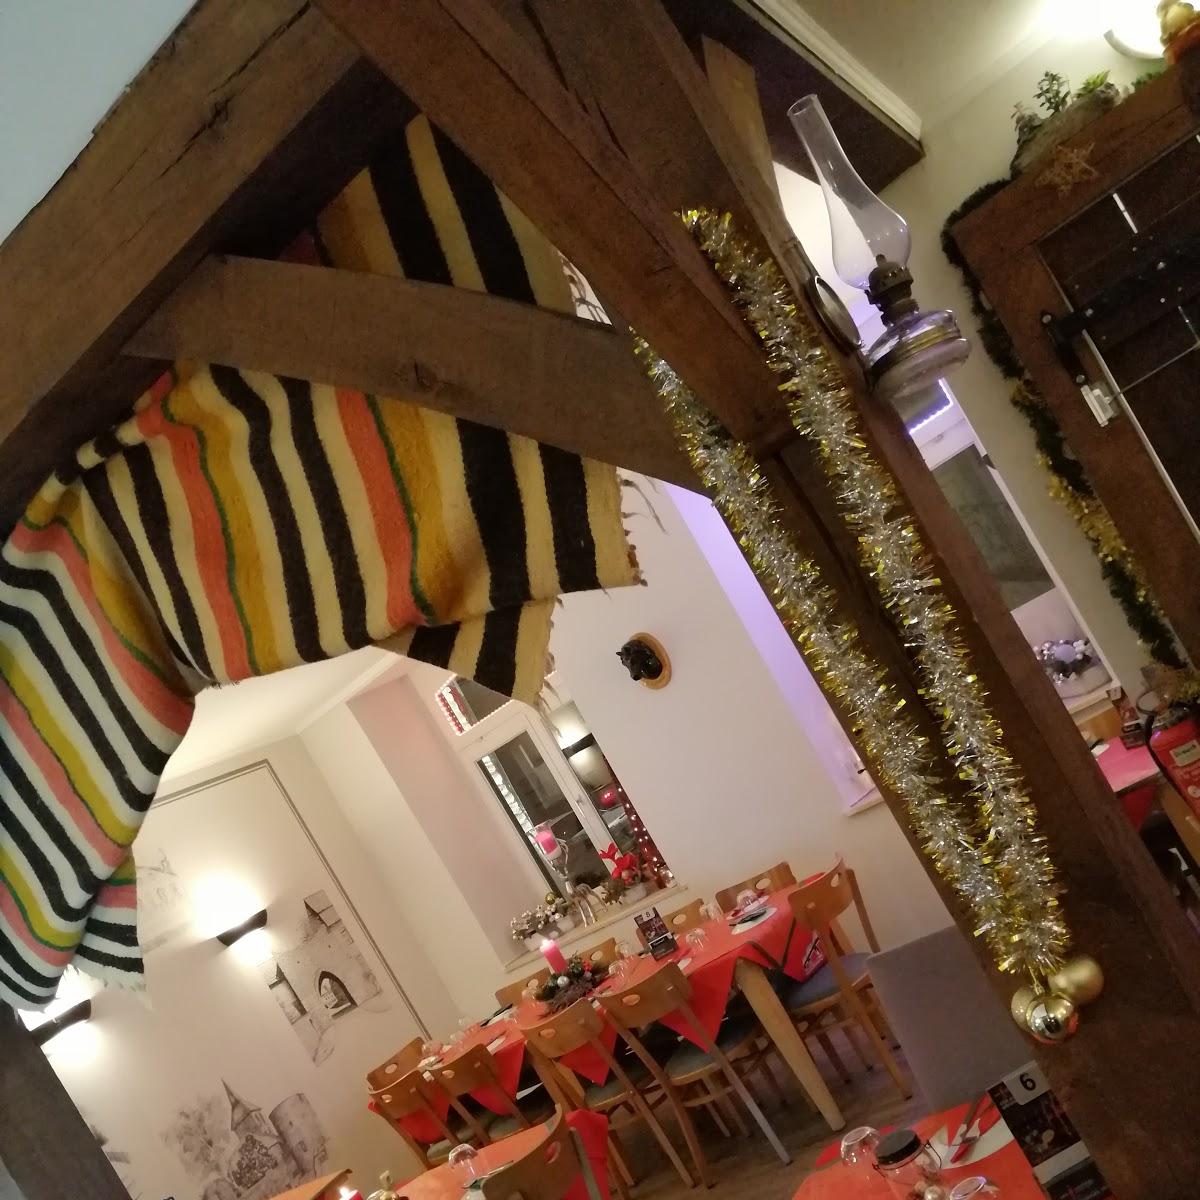 Restaurant "Der Ribatejo Portugiesische Spezialität" in Wassenberg